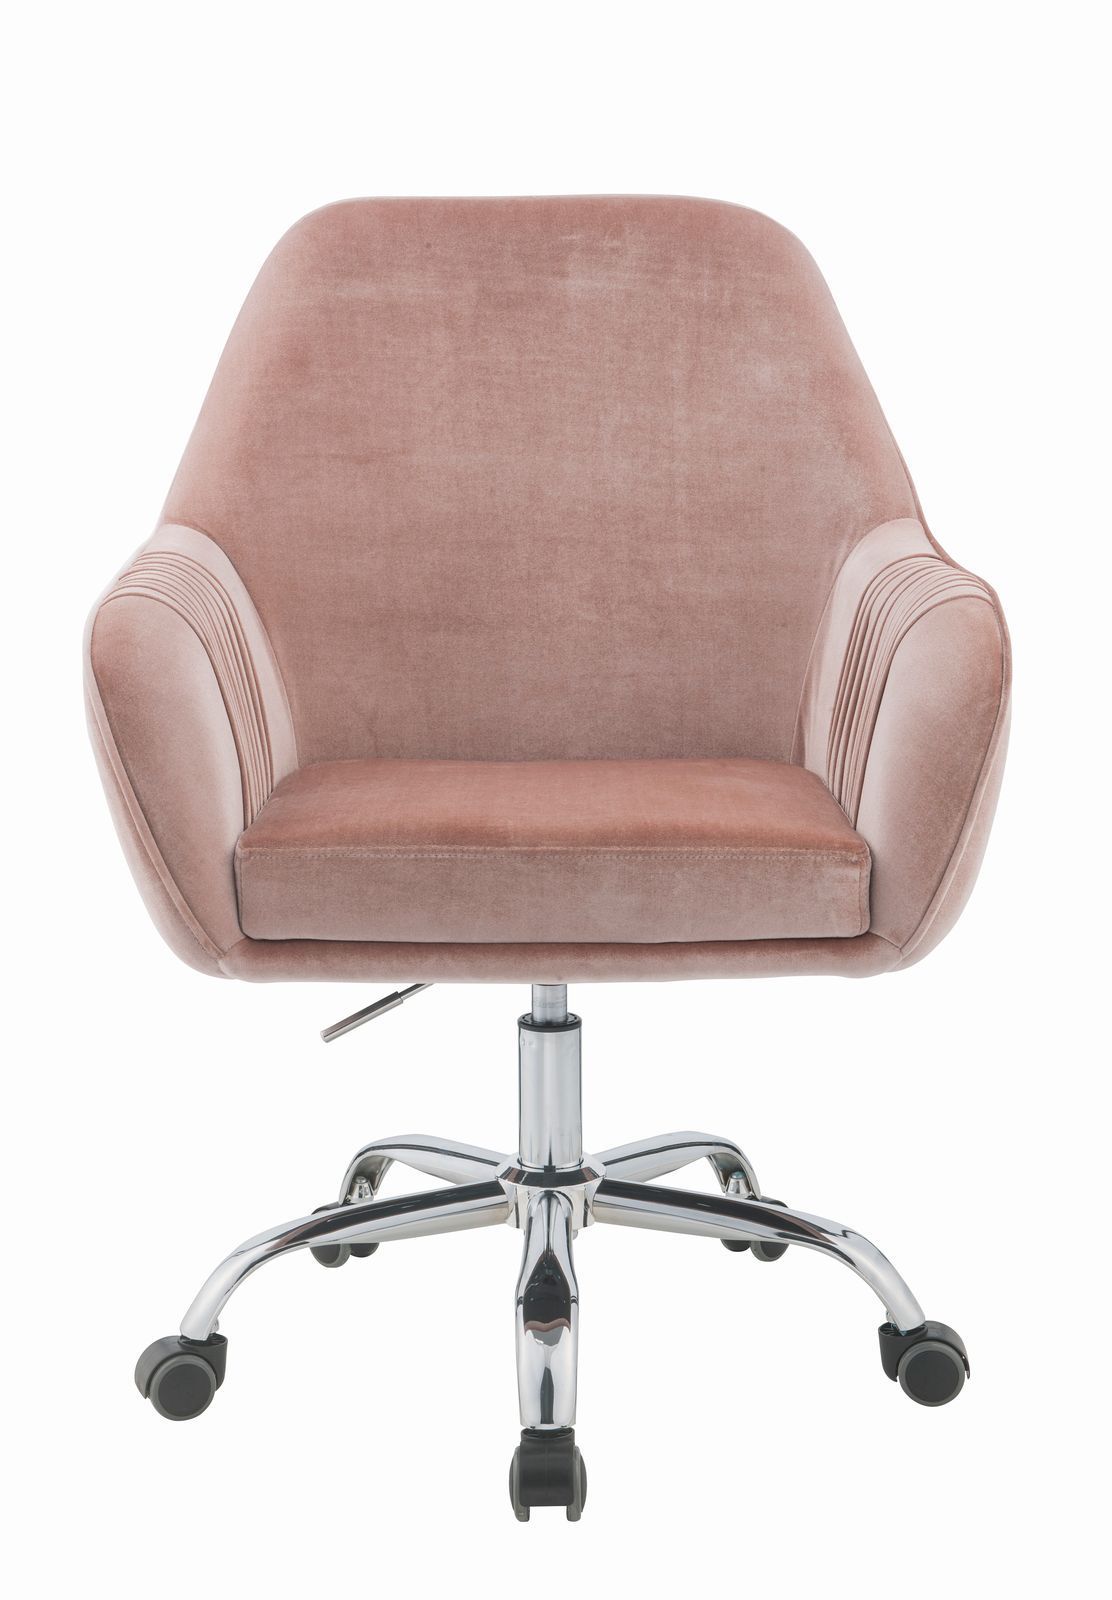 Romantic Office Chair - Pink Peach Velvet & Chrome